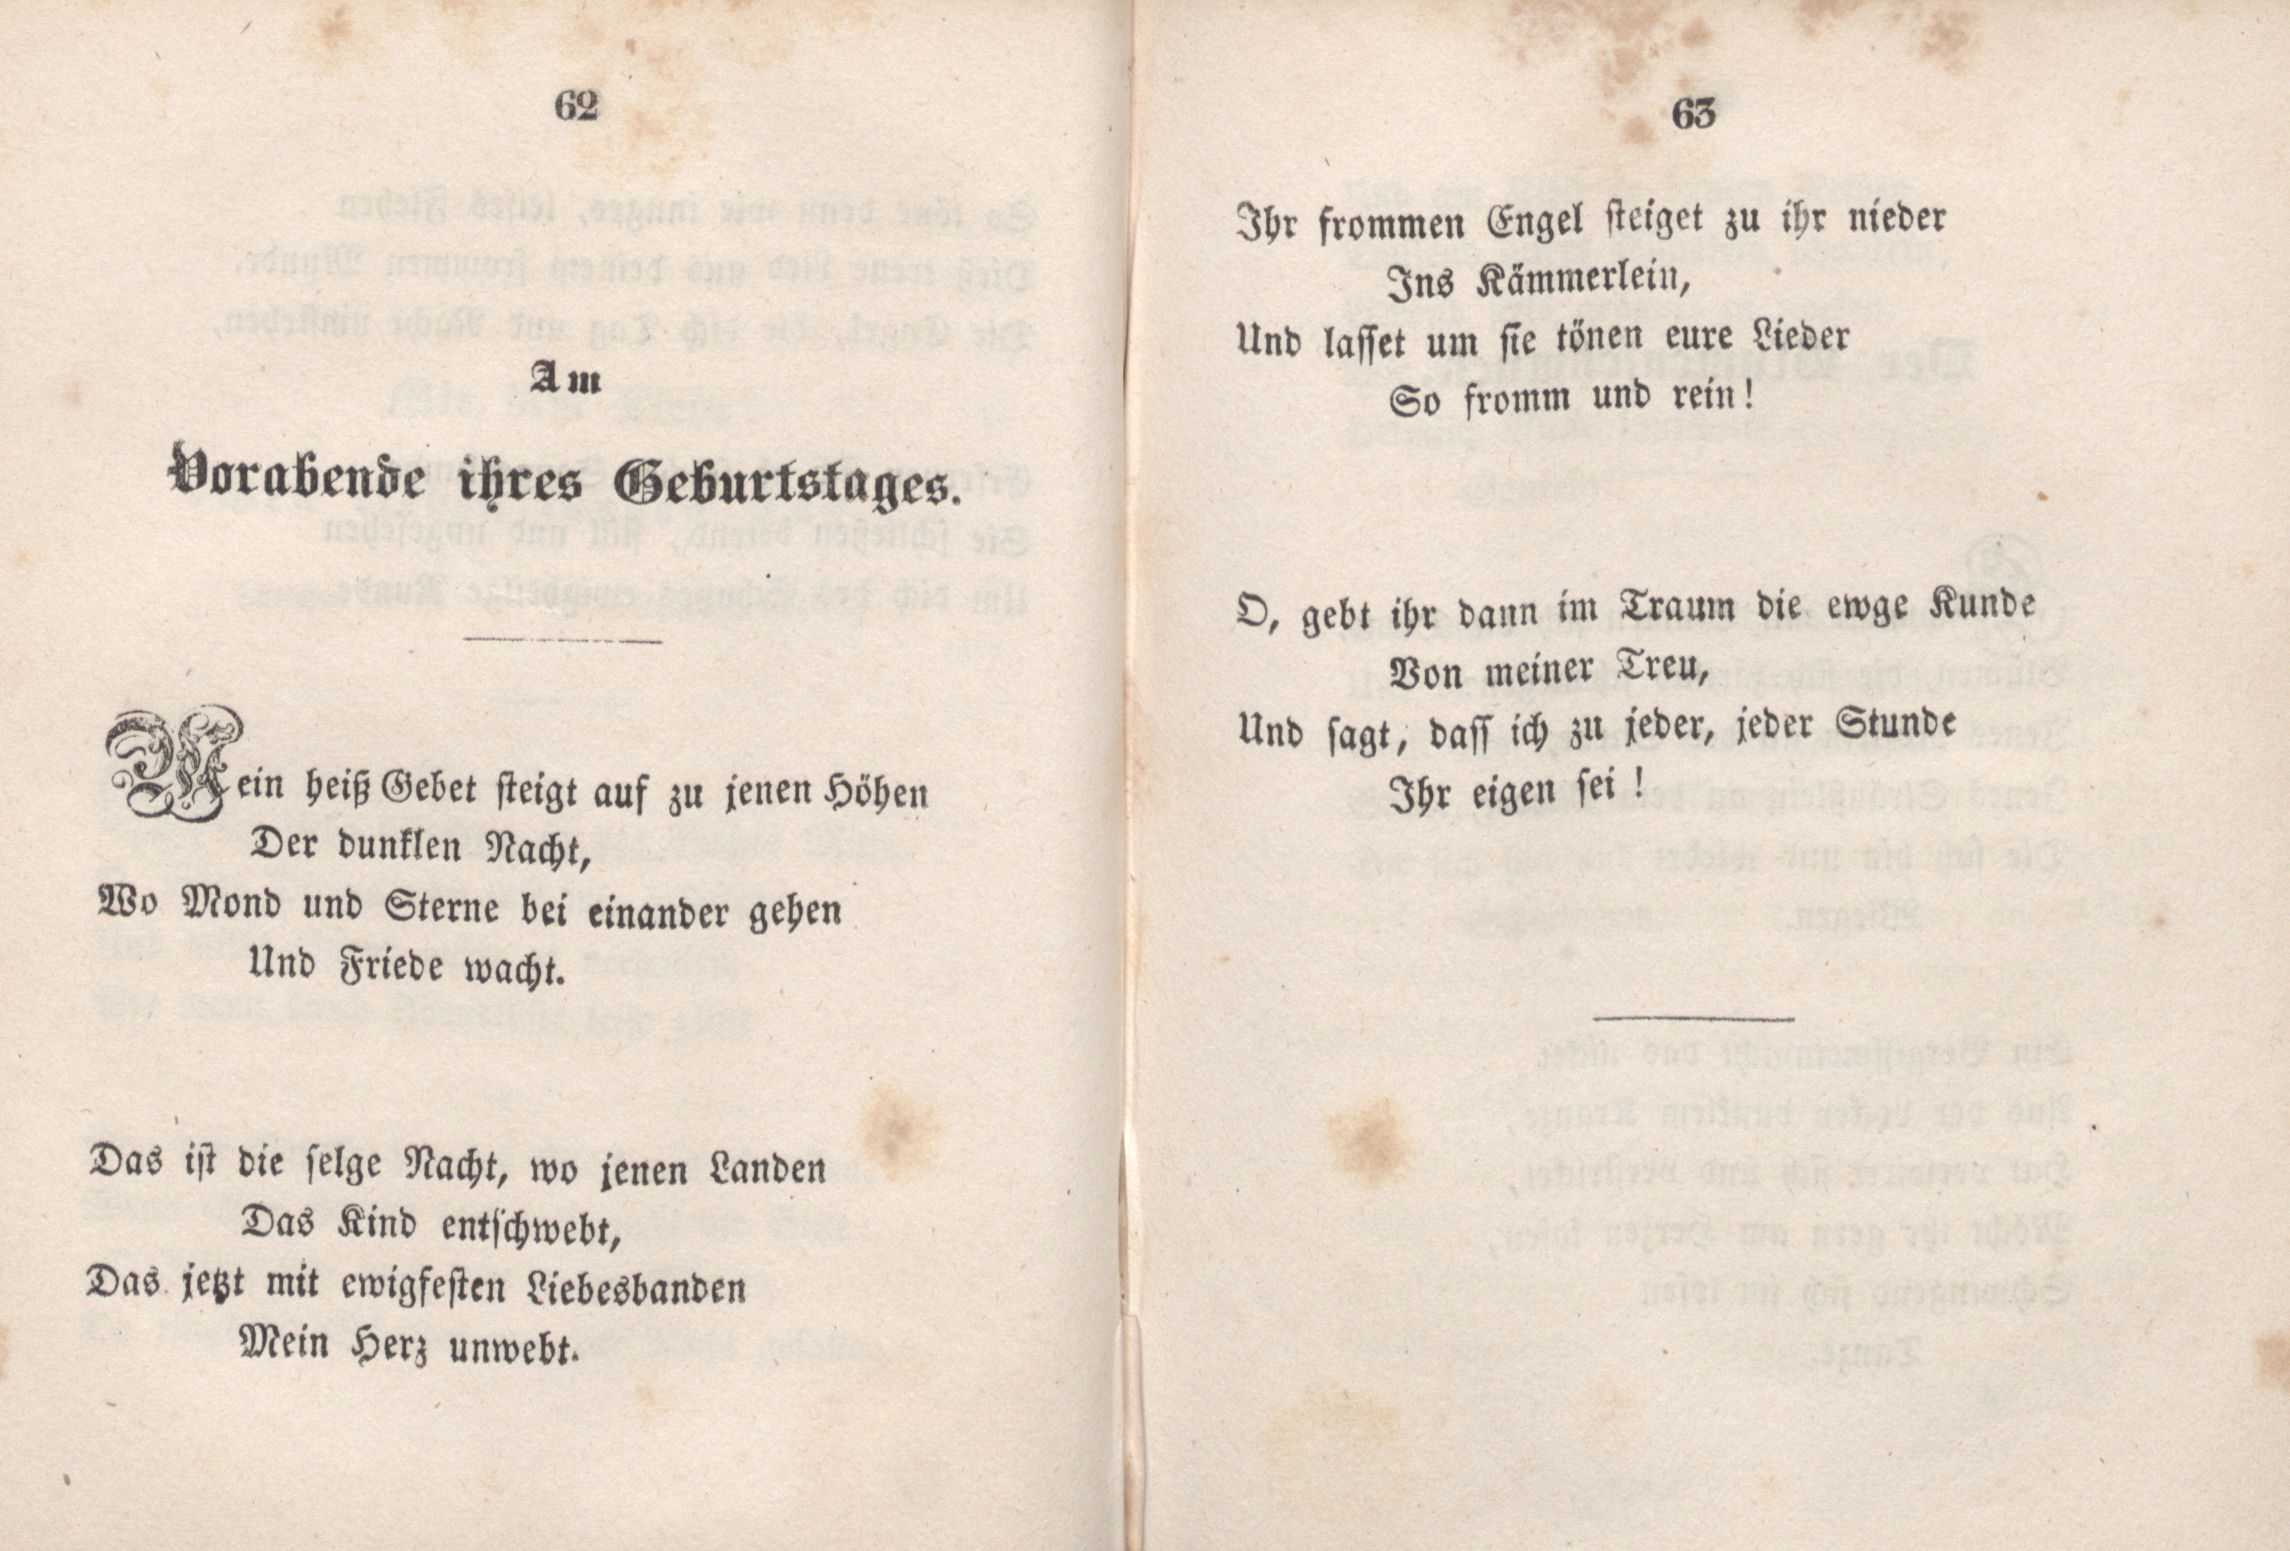 Am Vorabende ihres Geburtstages (1846) | 1. (62-63) Main body of text